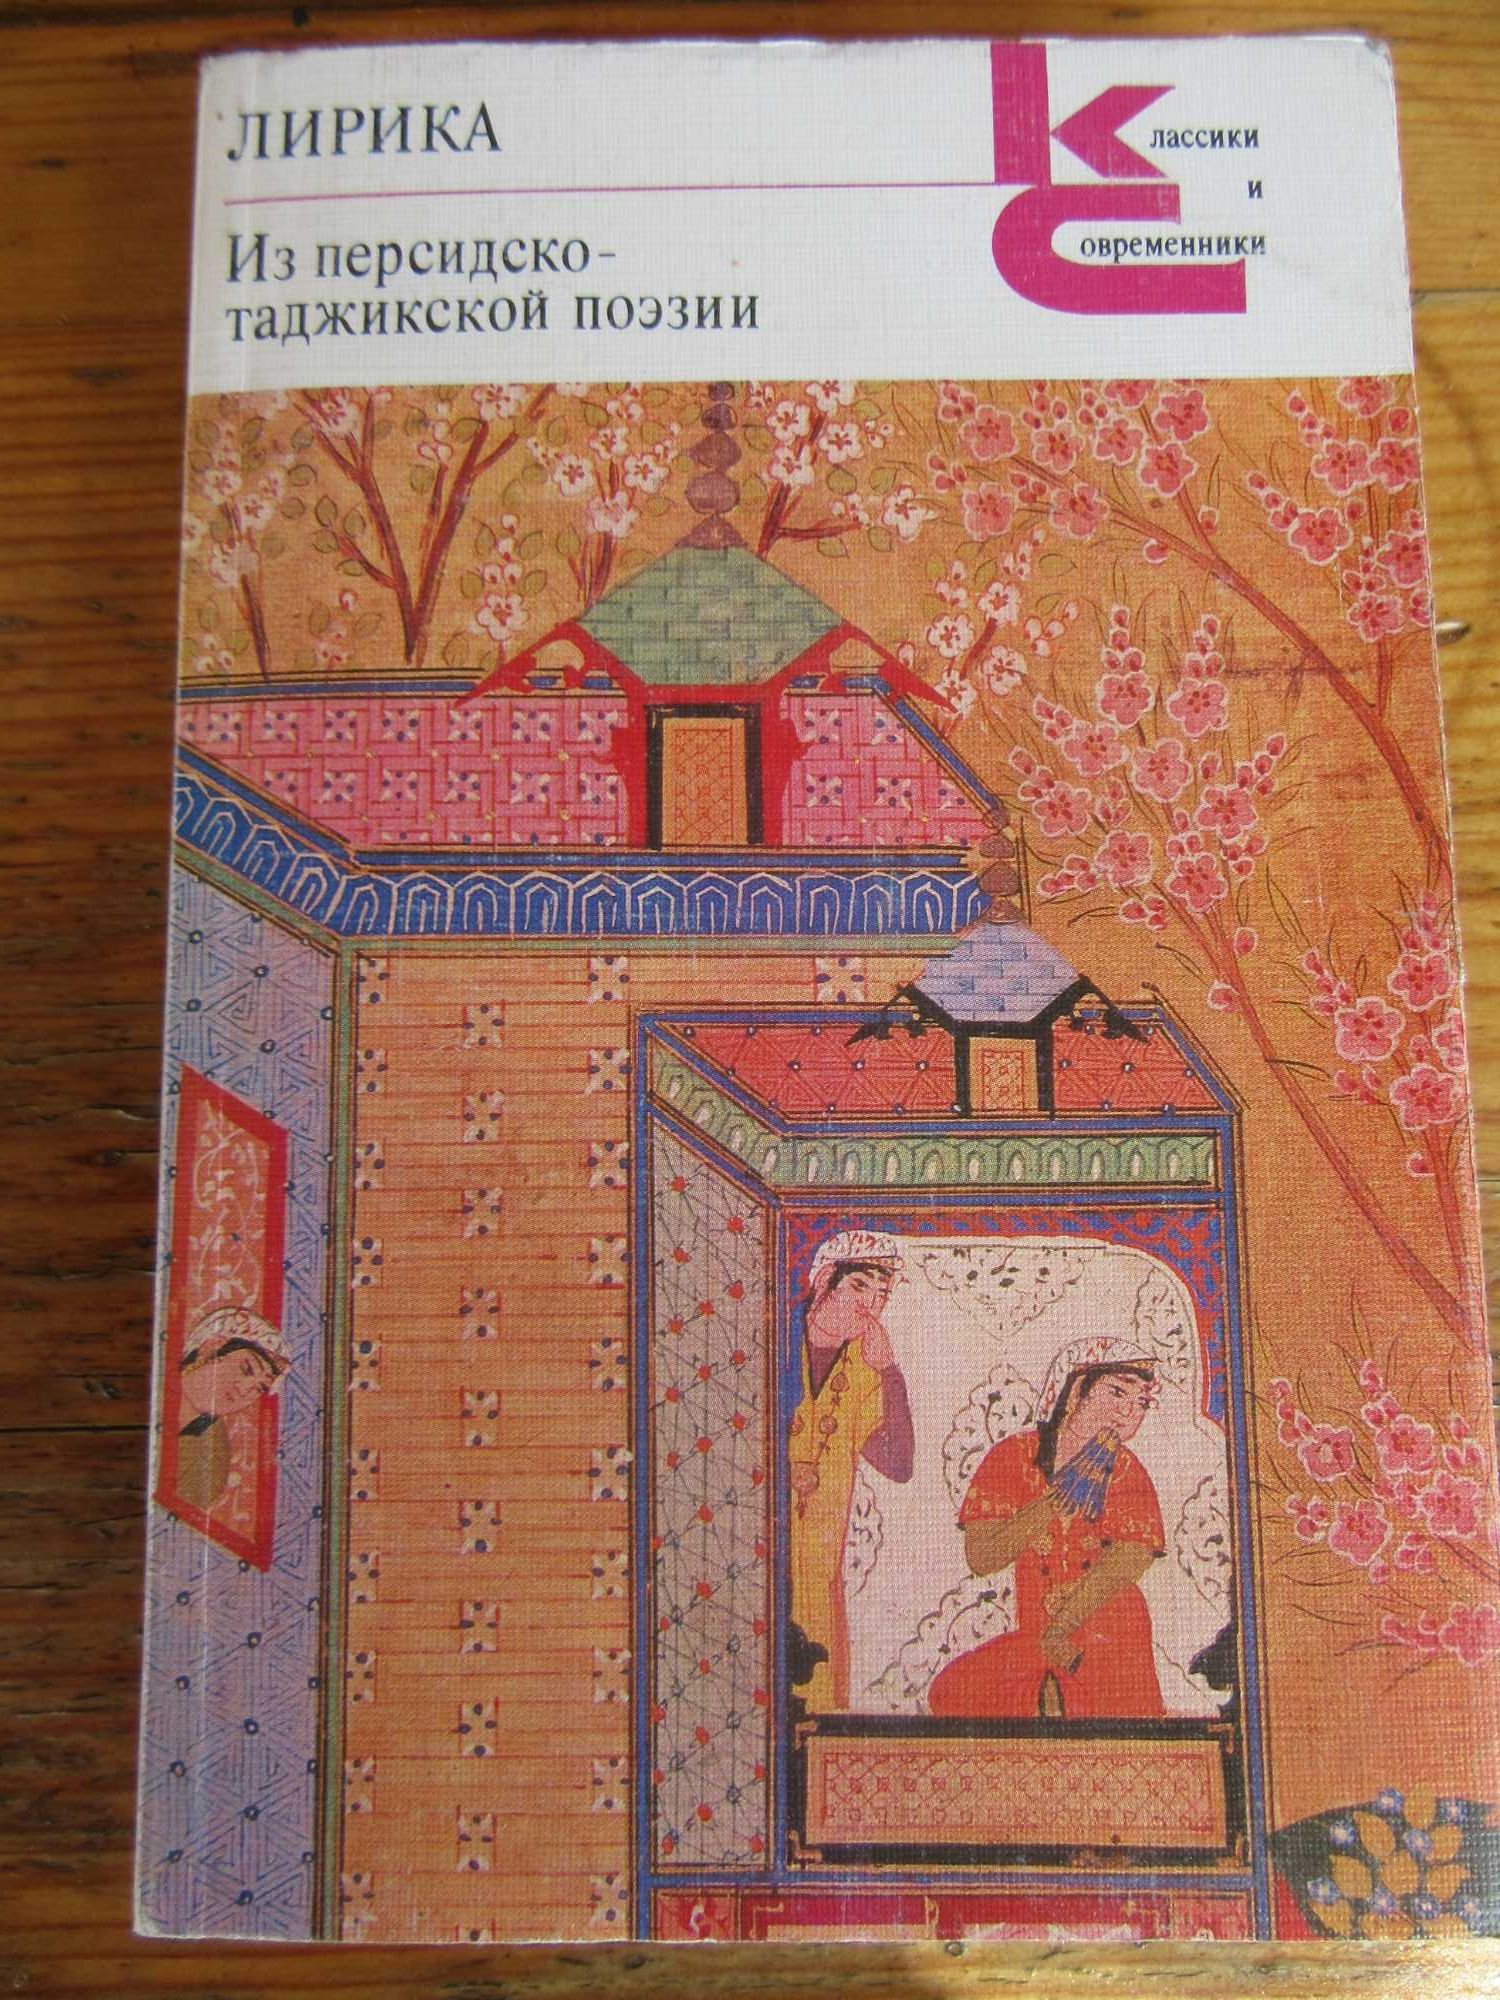 Лирика.Из персидско-таджикской поэзии."Классики и современники"1987 г.